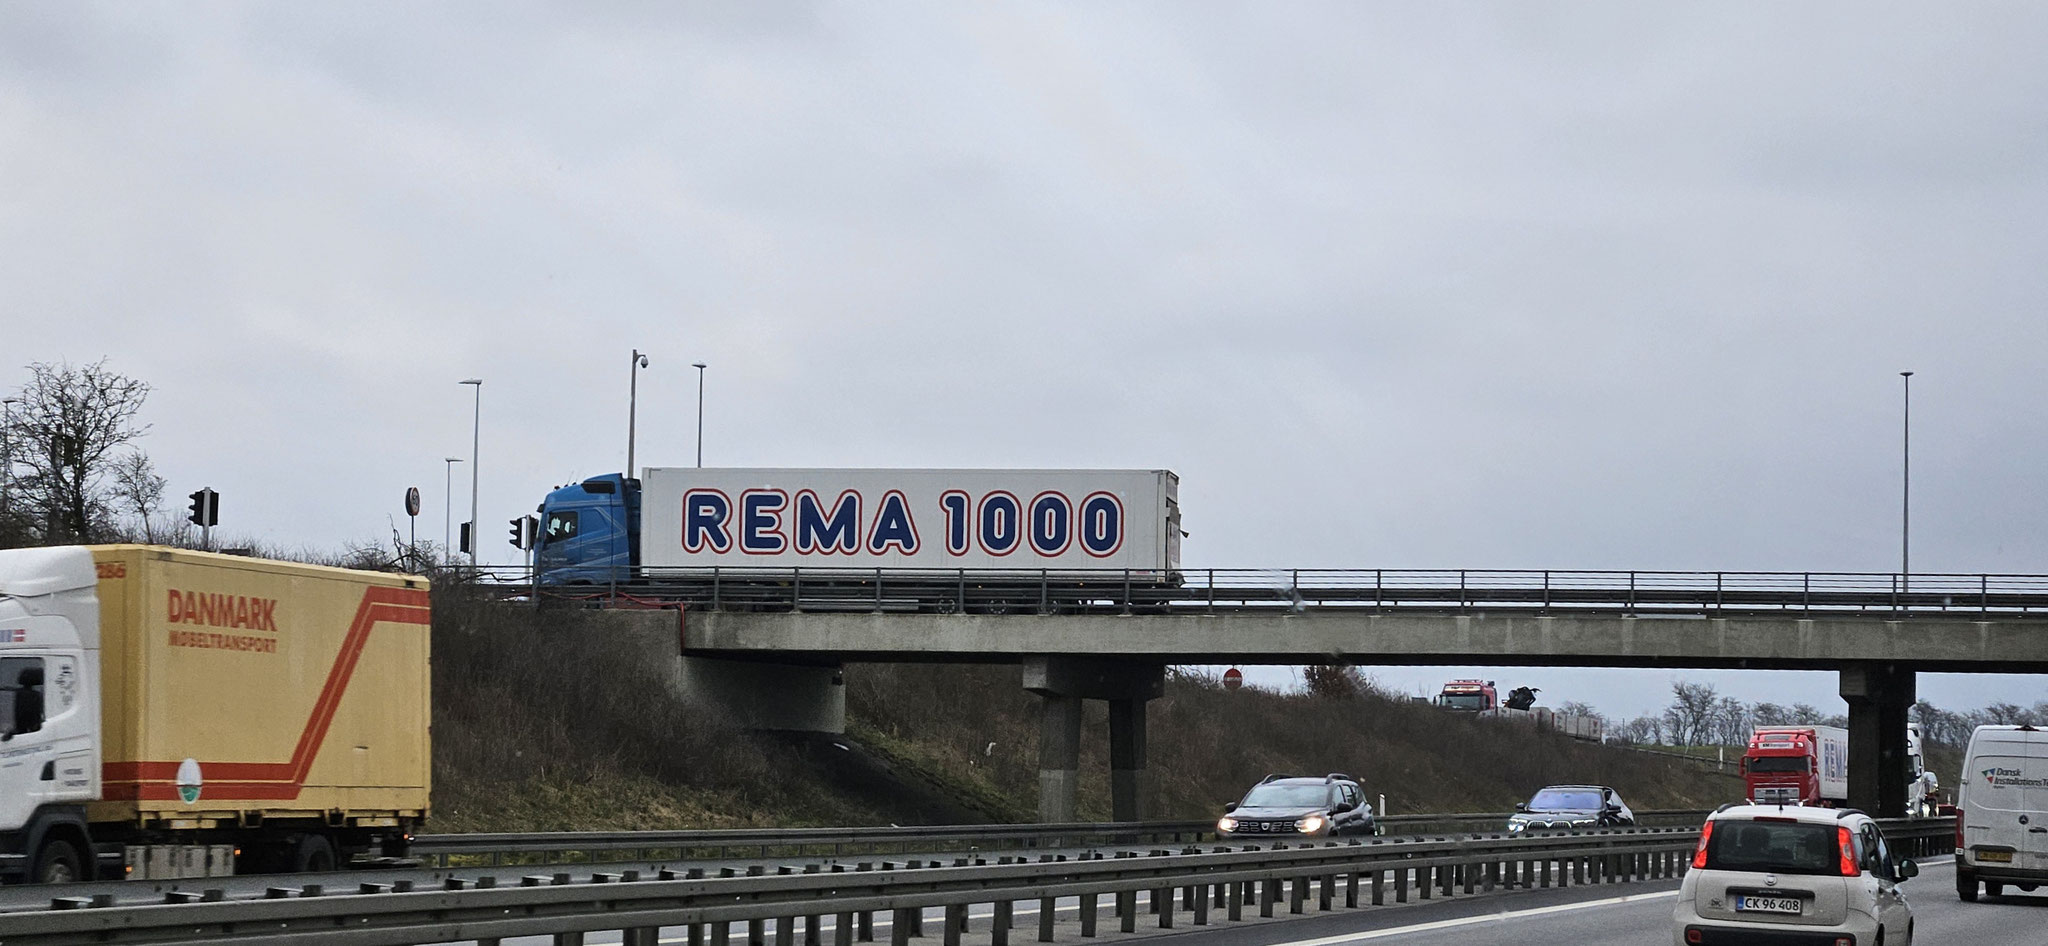 Rema 1000 - wir sind angekommen